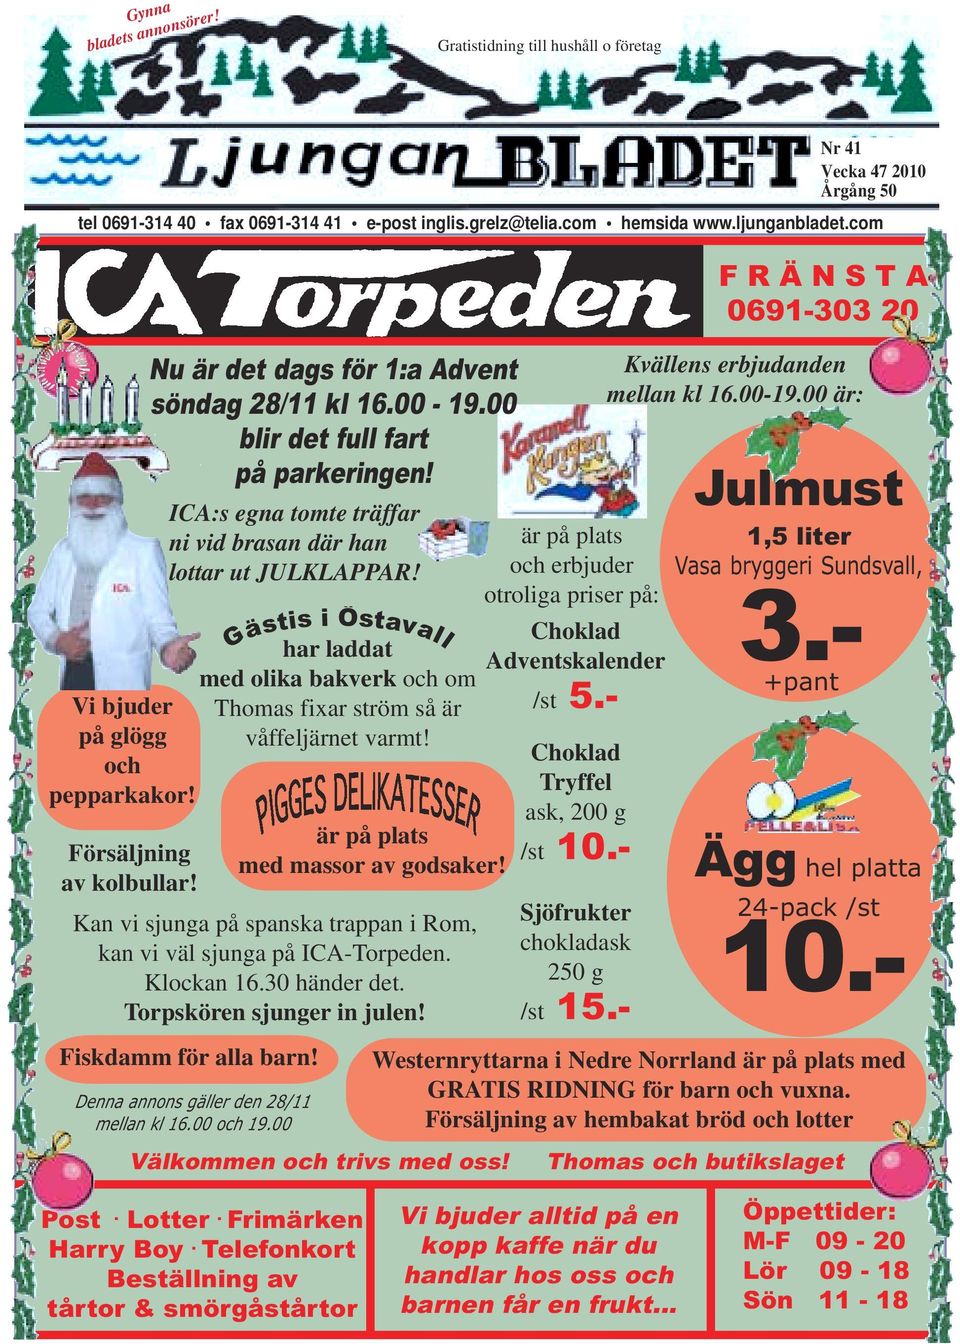 ICA:s egna tomte träffar ni vid brasan där han lottar ut JULKLAPPAR! Denna annons gäller den 28/11 mellan kl 16.00 och 19.